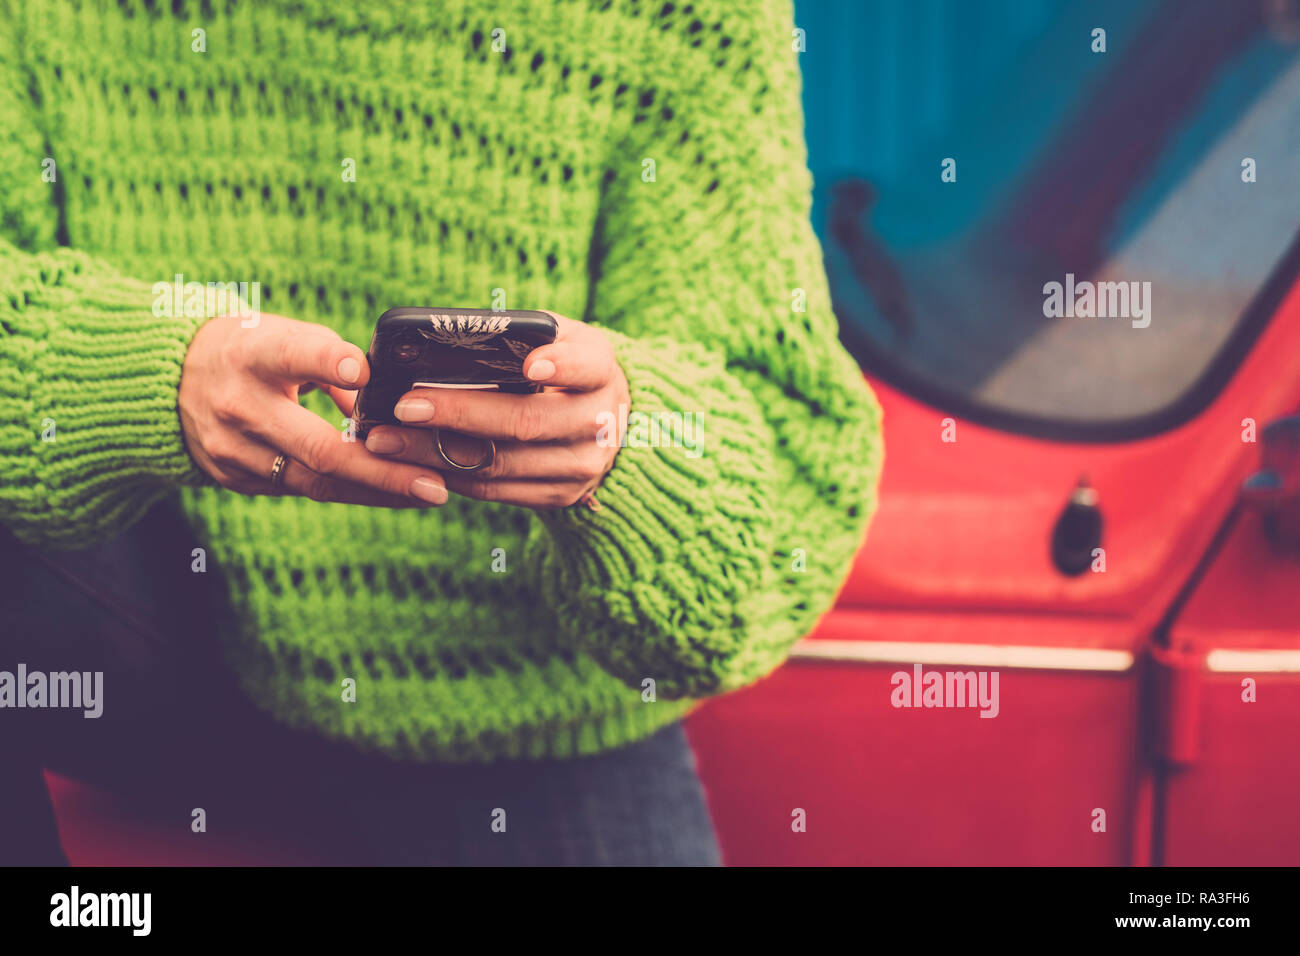 Close-up female hands en utilisant la messagerie instantanée et à la technologie moderne smart phone - vestes vert et rouge old vintage car en arrière-plan - de couleur lifestyl Banque D'Images